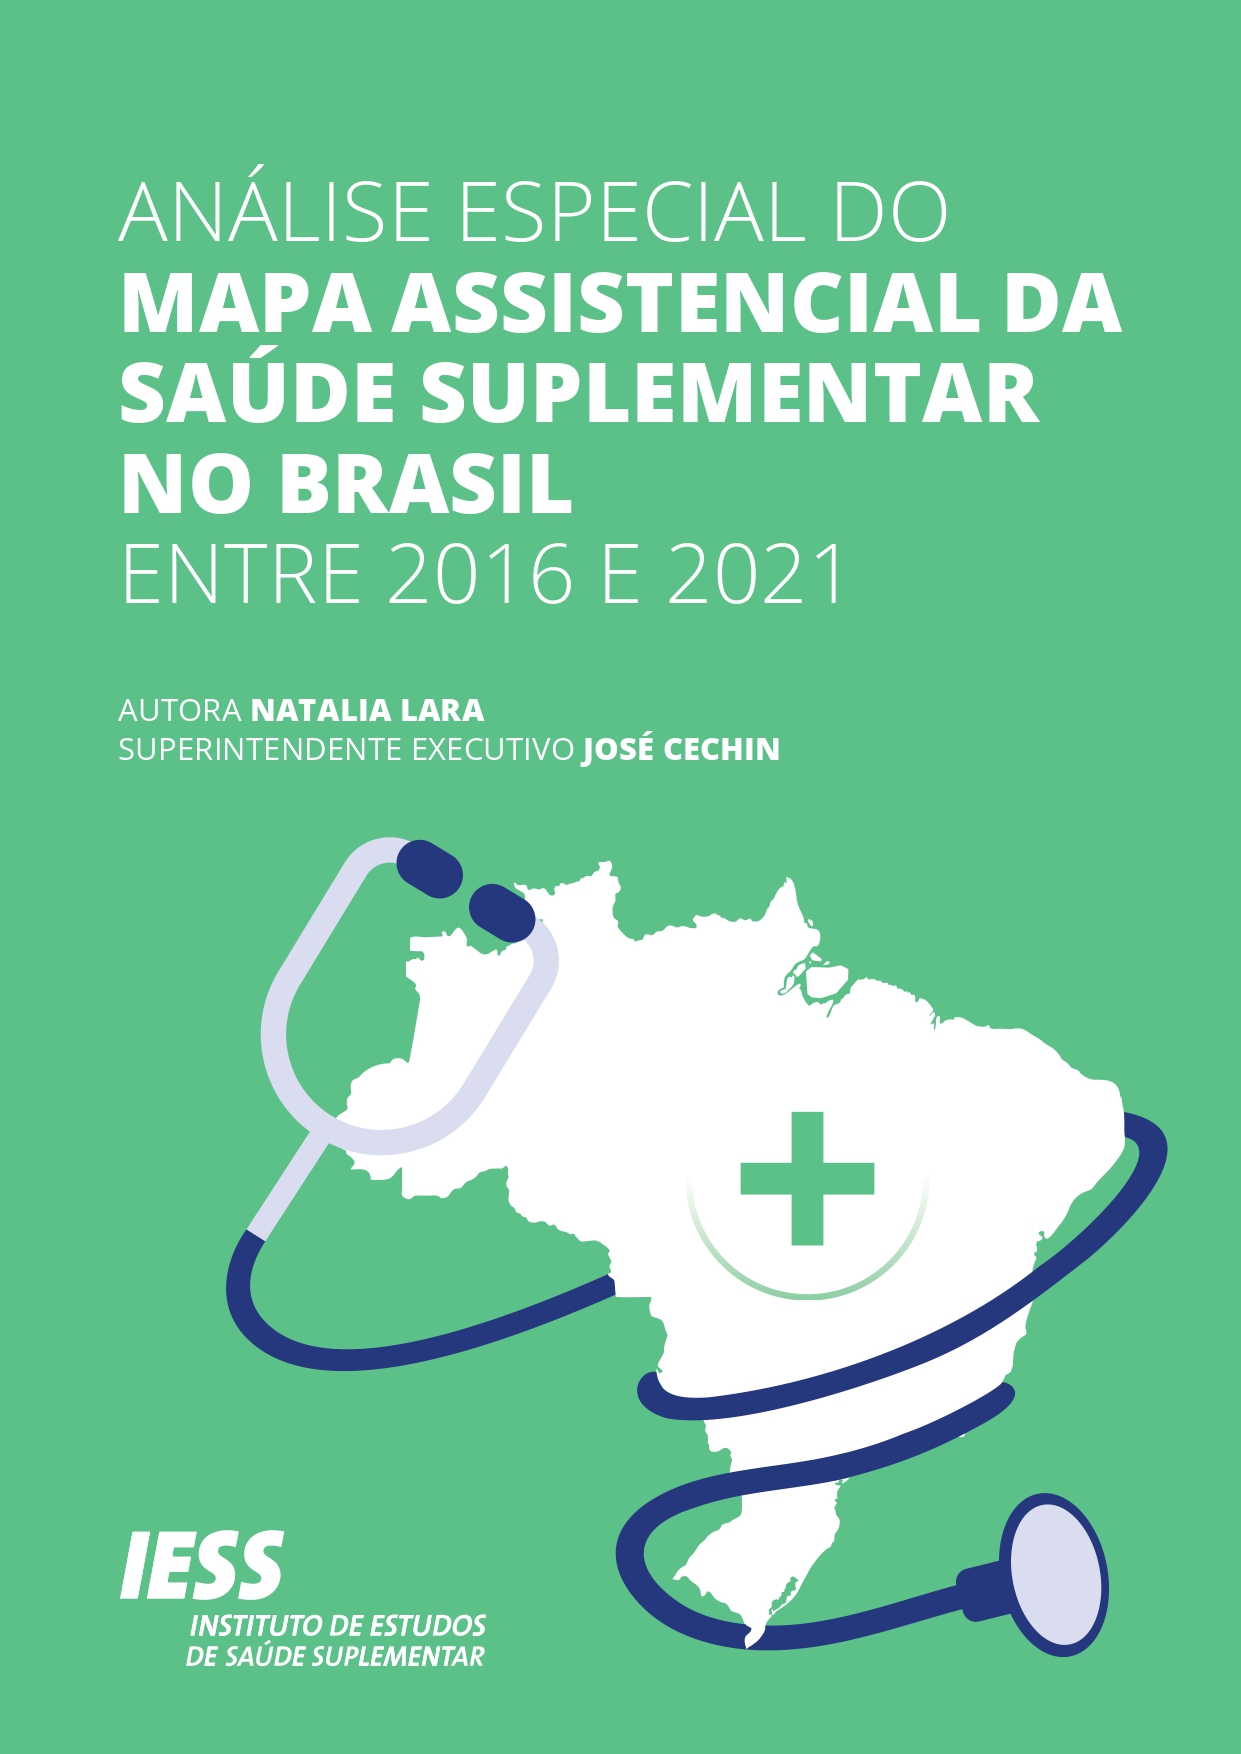 álise Especial do Mapa Assistencial da Saúde Suplementar no Brasil – Entre 2016 e 2021 